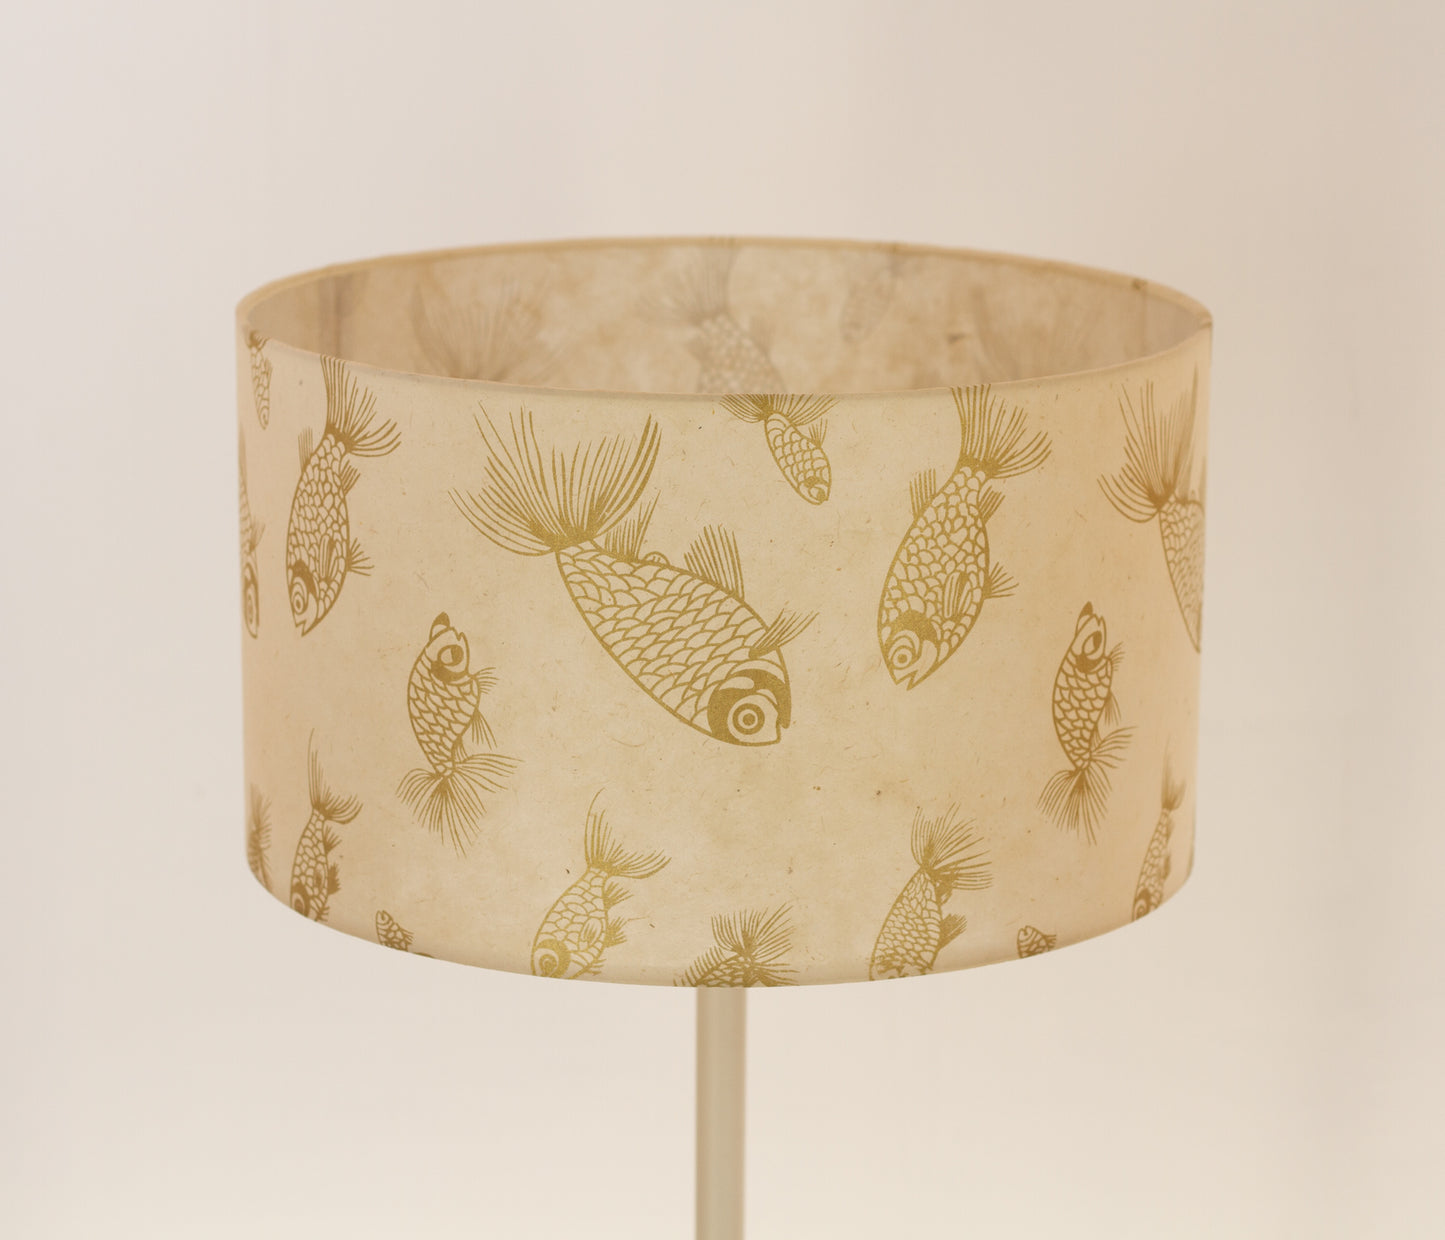 Drum Lamp Shade - P40 - Gold Fish Screen Print on Natural Lokta, 35cm(d) x 20cm(h)